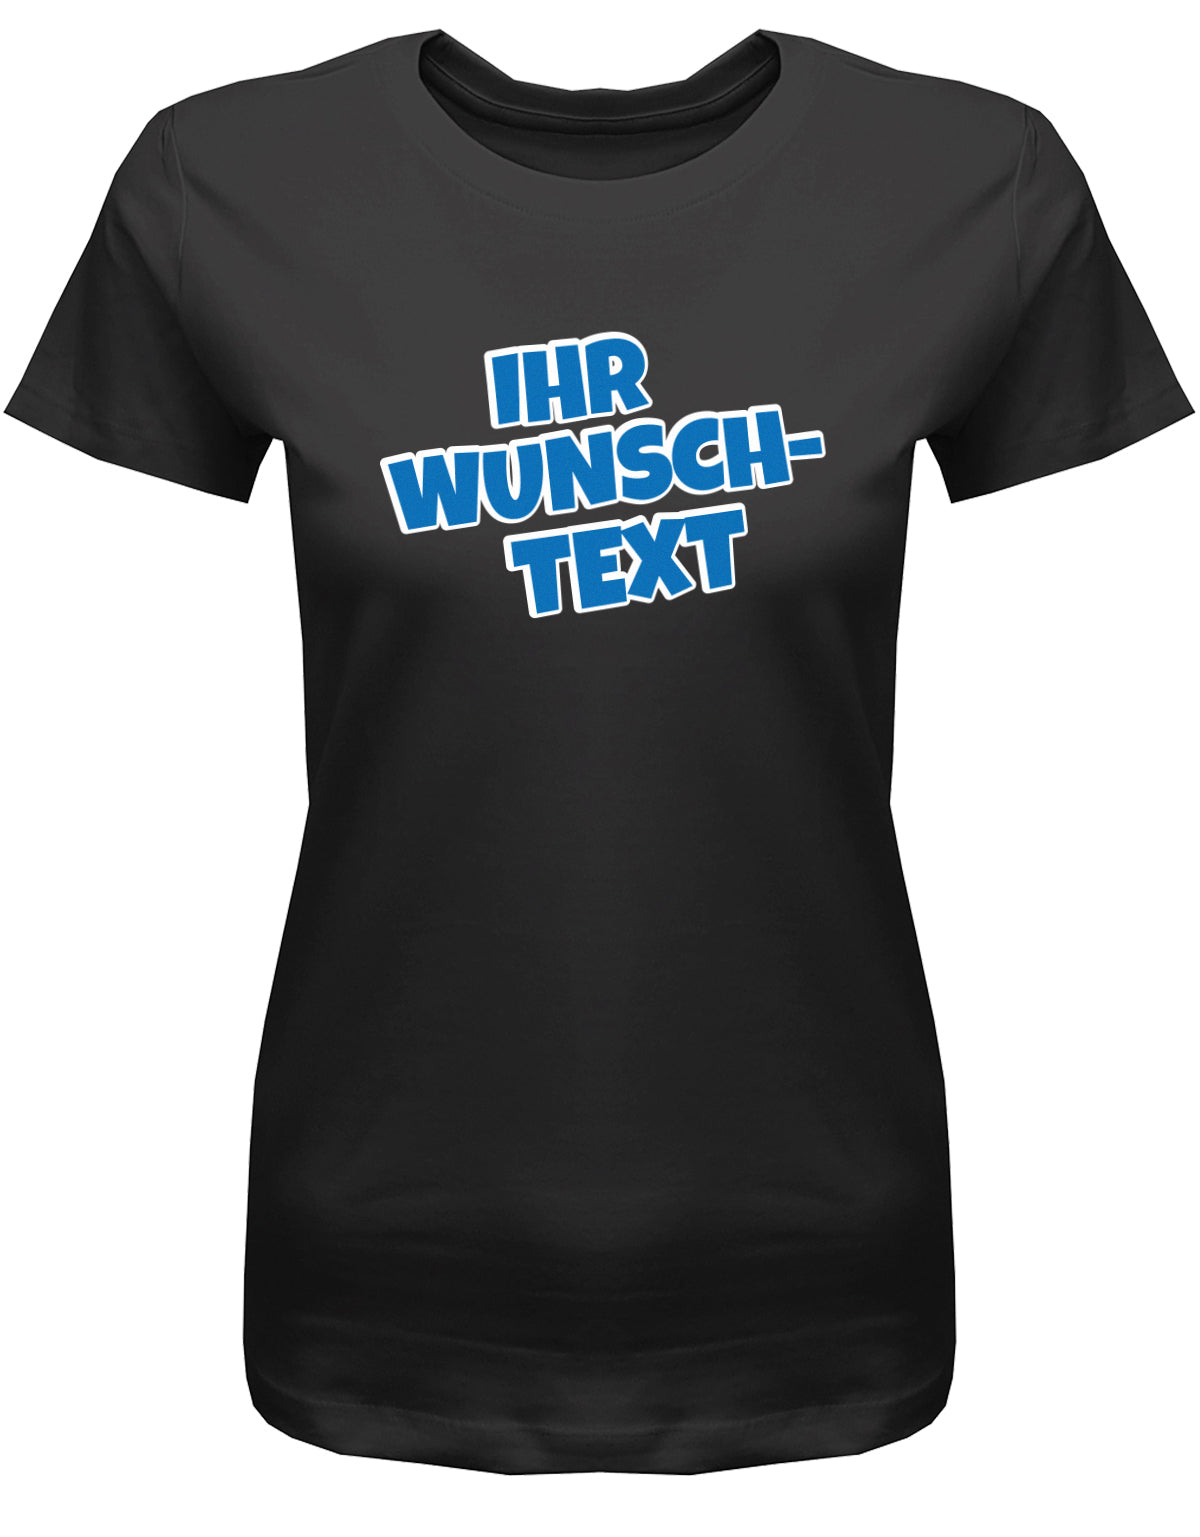 Frauen Tshirt mit Wunschtext.  Comic Schriftart mit weißer Umrandung. Schwarz